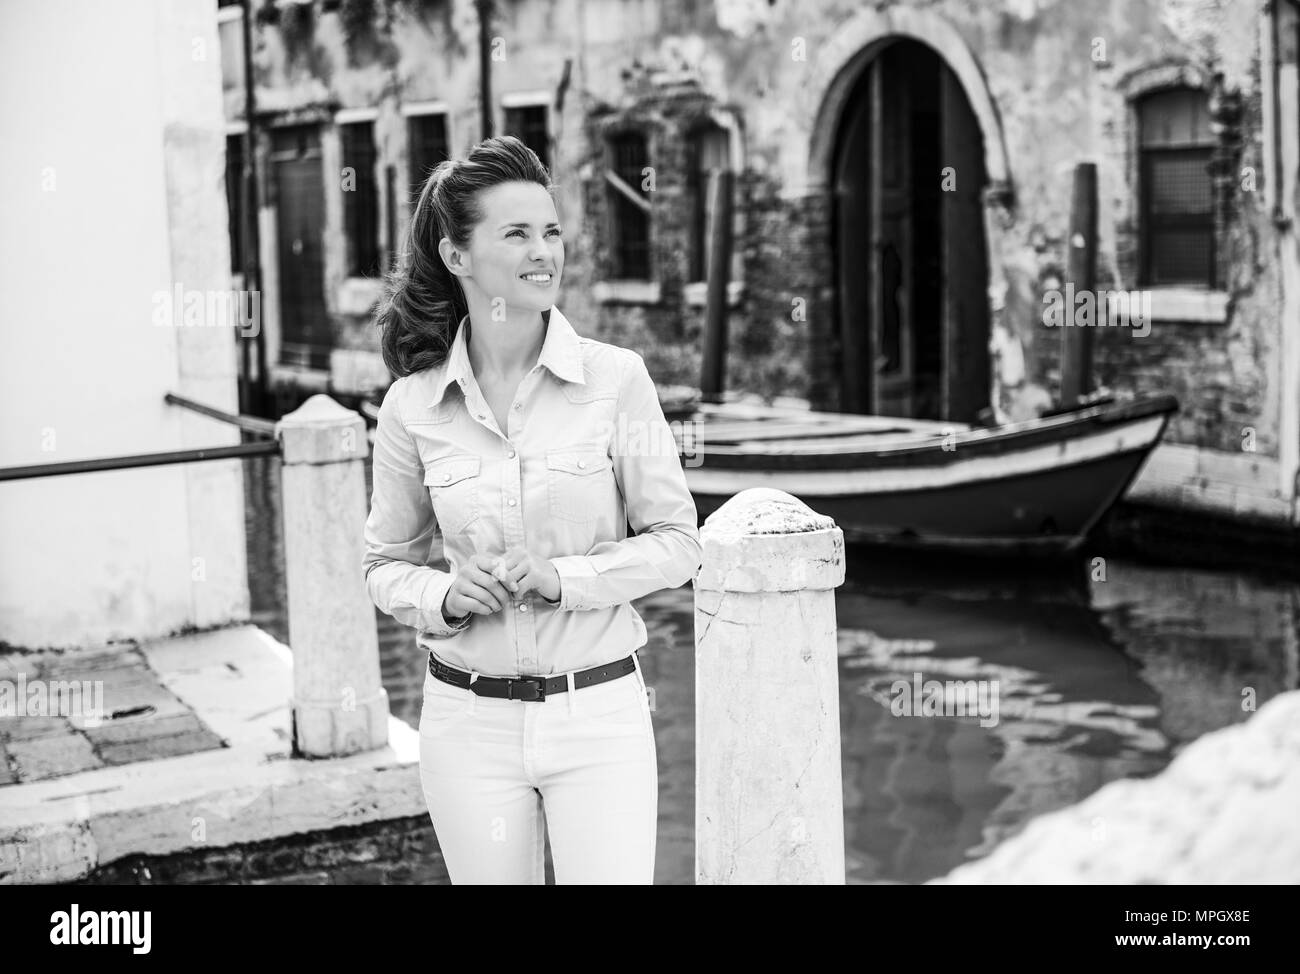 Looking up and smiling, une femme se tient debout près de l'un des nombreux canaux de Venise, jusqu'à dans la distance, se demandant où ses pieds se son nex Banque D'Images